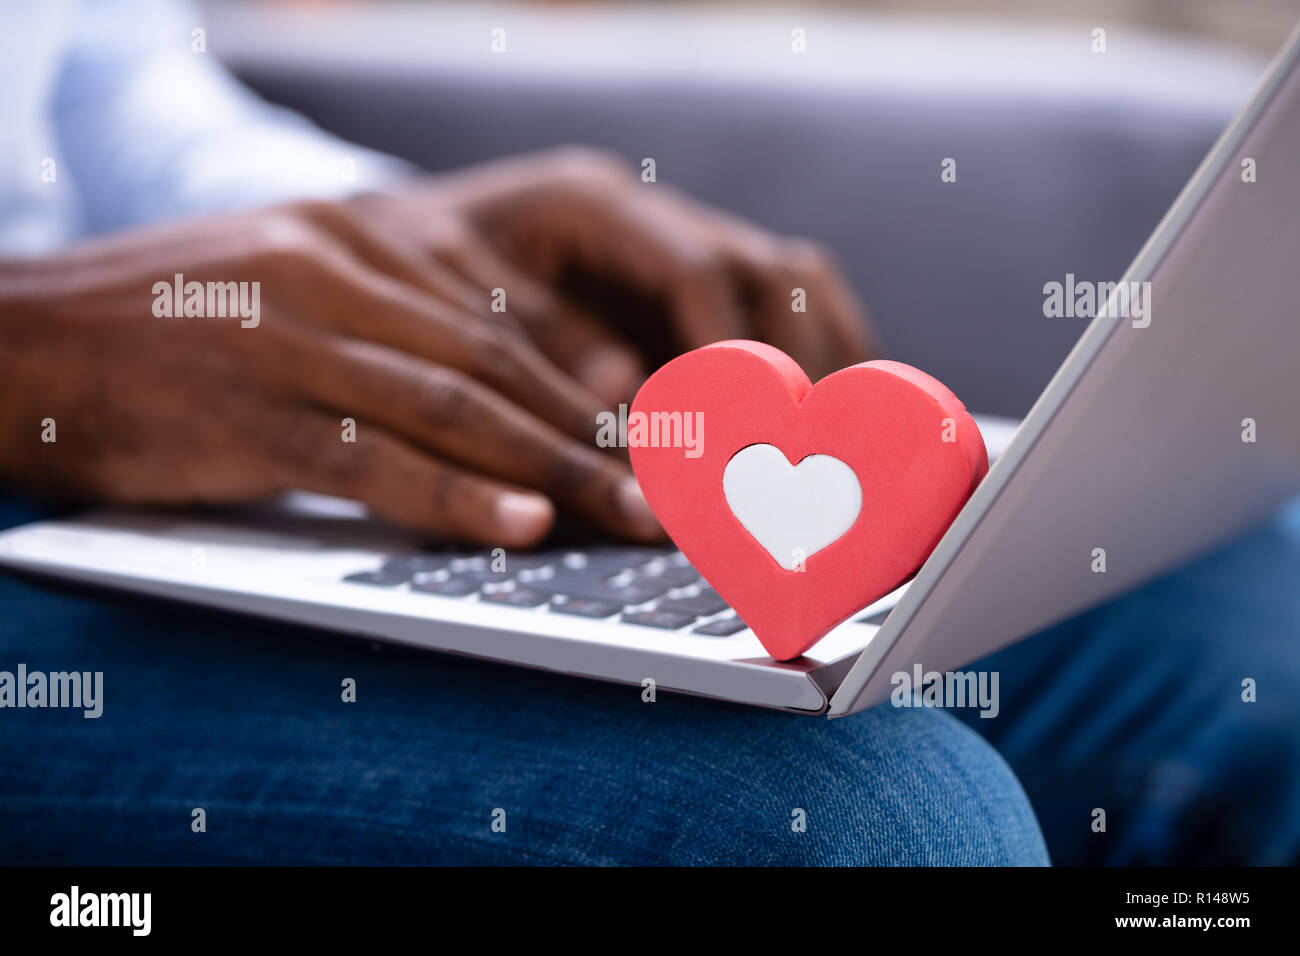 Close-up di Heartshape rossa sulla tastiera mentre la mano d'uomo utilizzando Laptop Foto Stock